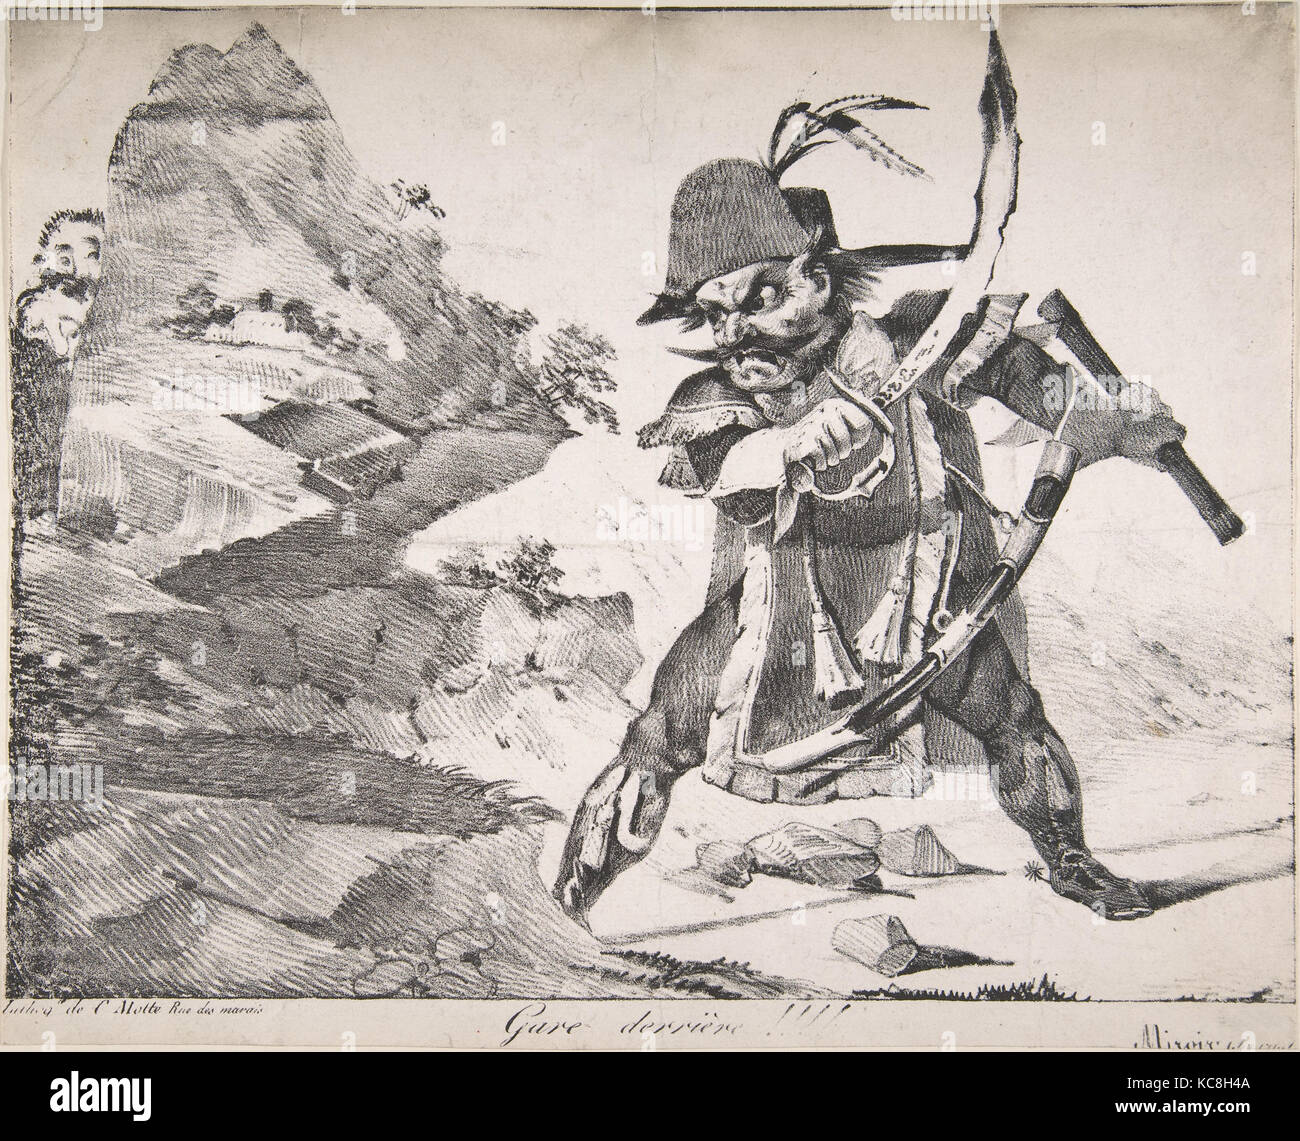 Regardez votre l'arrière !  !  !  !, 1822, lithographie, seul état, feuille : 12 7/8 x 9 5/16 in. (31,2 x 25,1 cm), d'impressions, d'Eugène Delacroix Banque D'Images